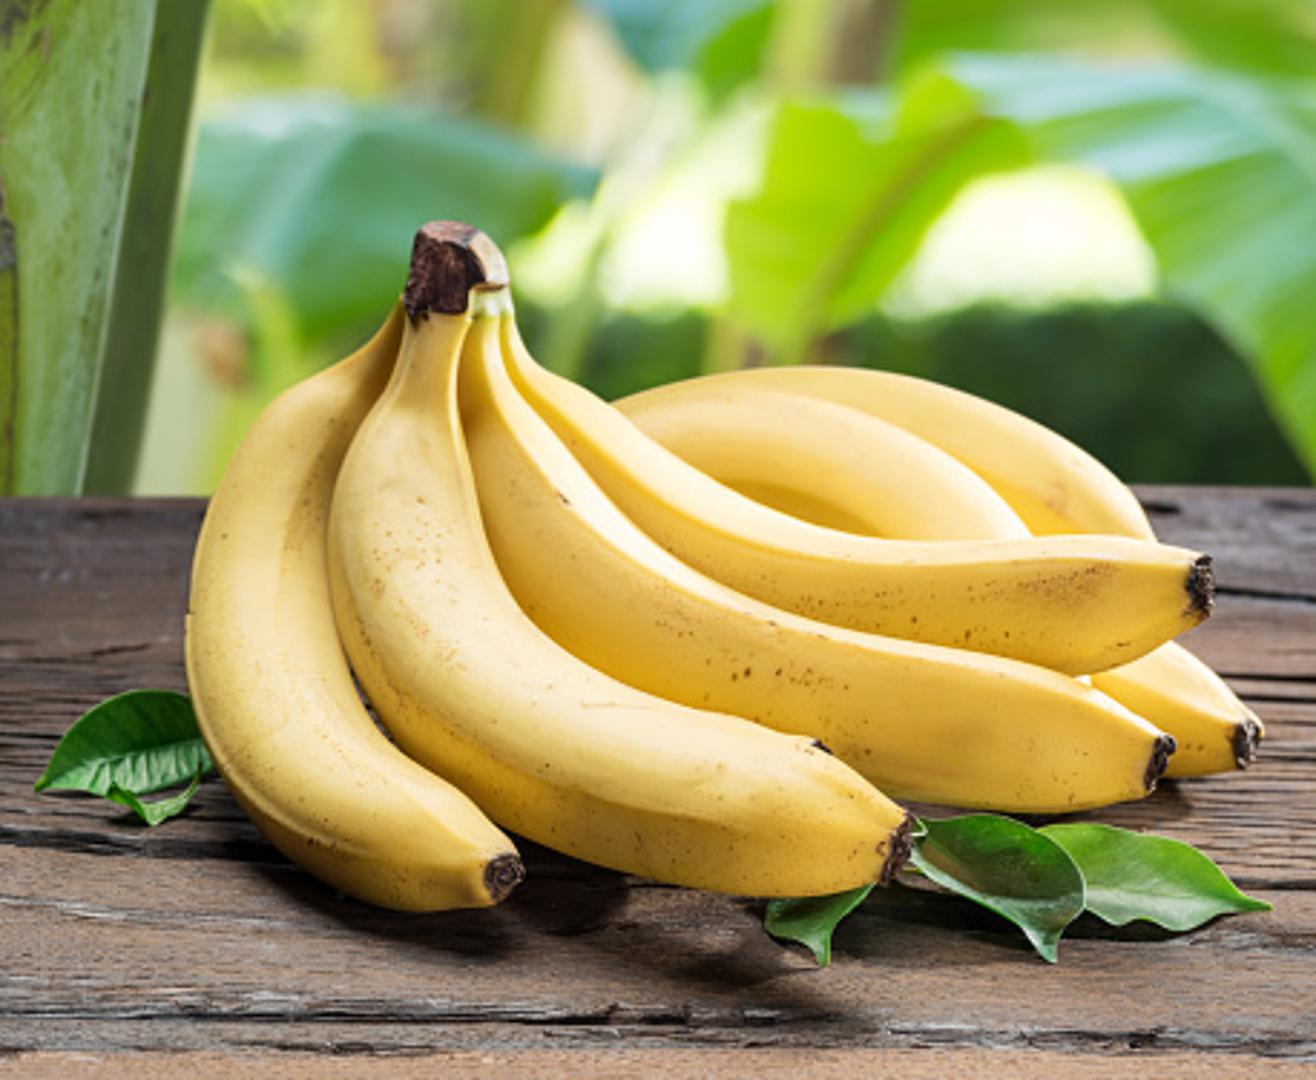 Mnogima su banane omiljeno voće, a većina izbjegava one tamne, smeđe i "gnjecave". Ako ste i sami među ljubiteljima žutih, tvrđih i ne previše zrelih banana, onda ćete sigurno željeti znati kako možete spriječiti brzo tamnjenje vaših omiljenih voćki. 